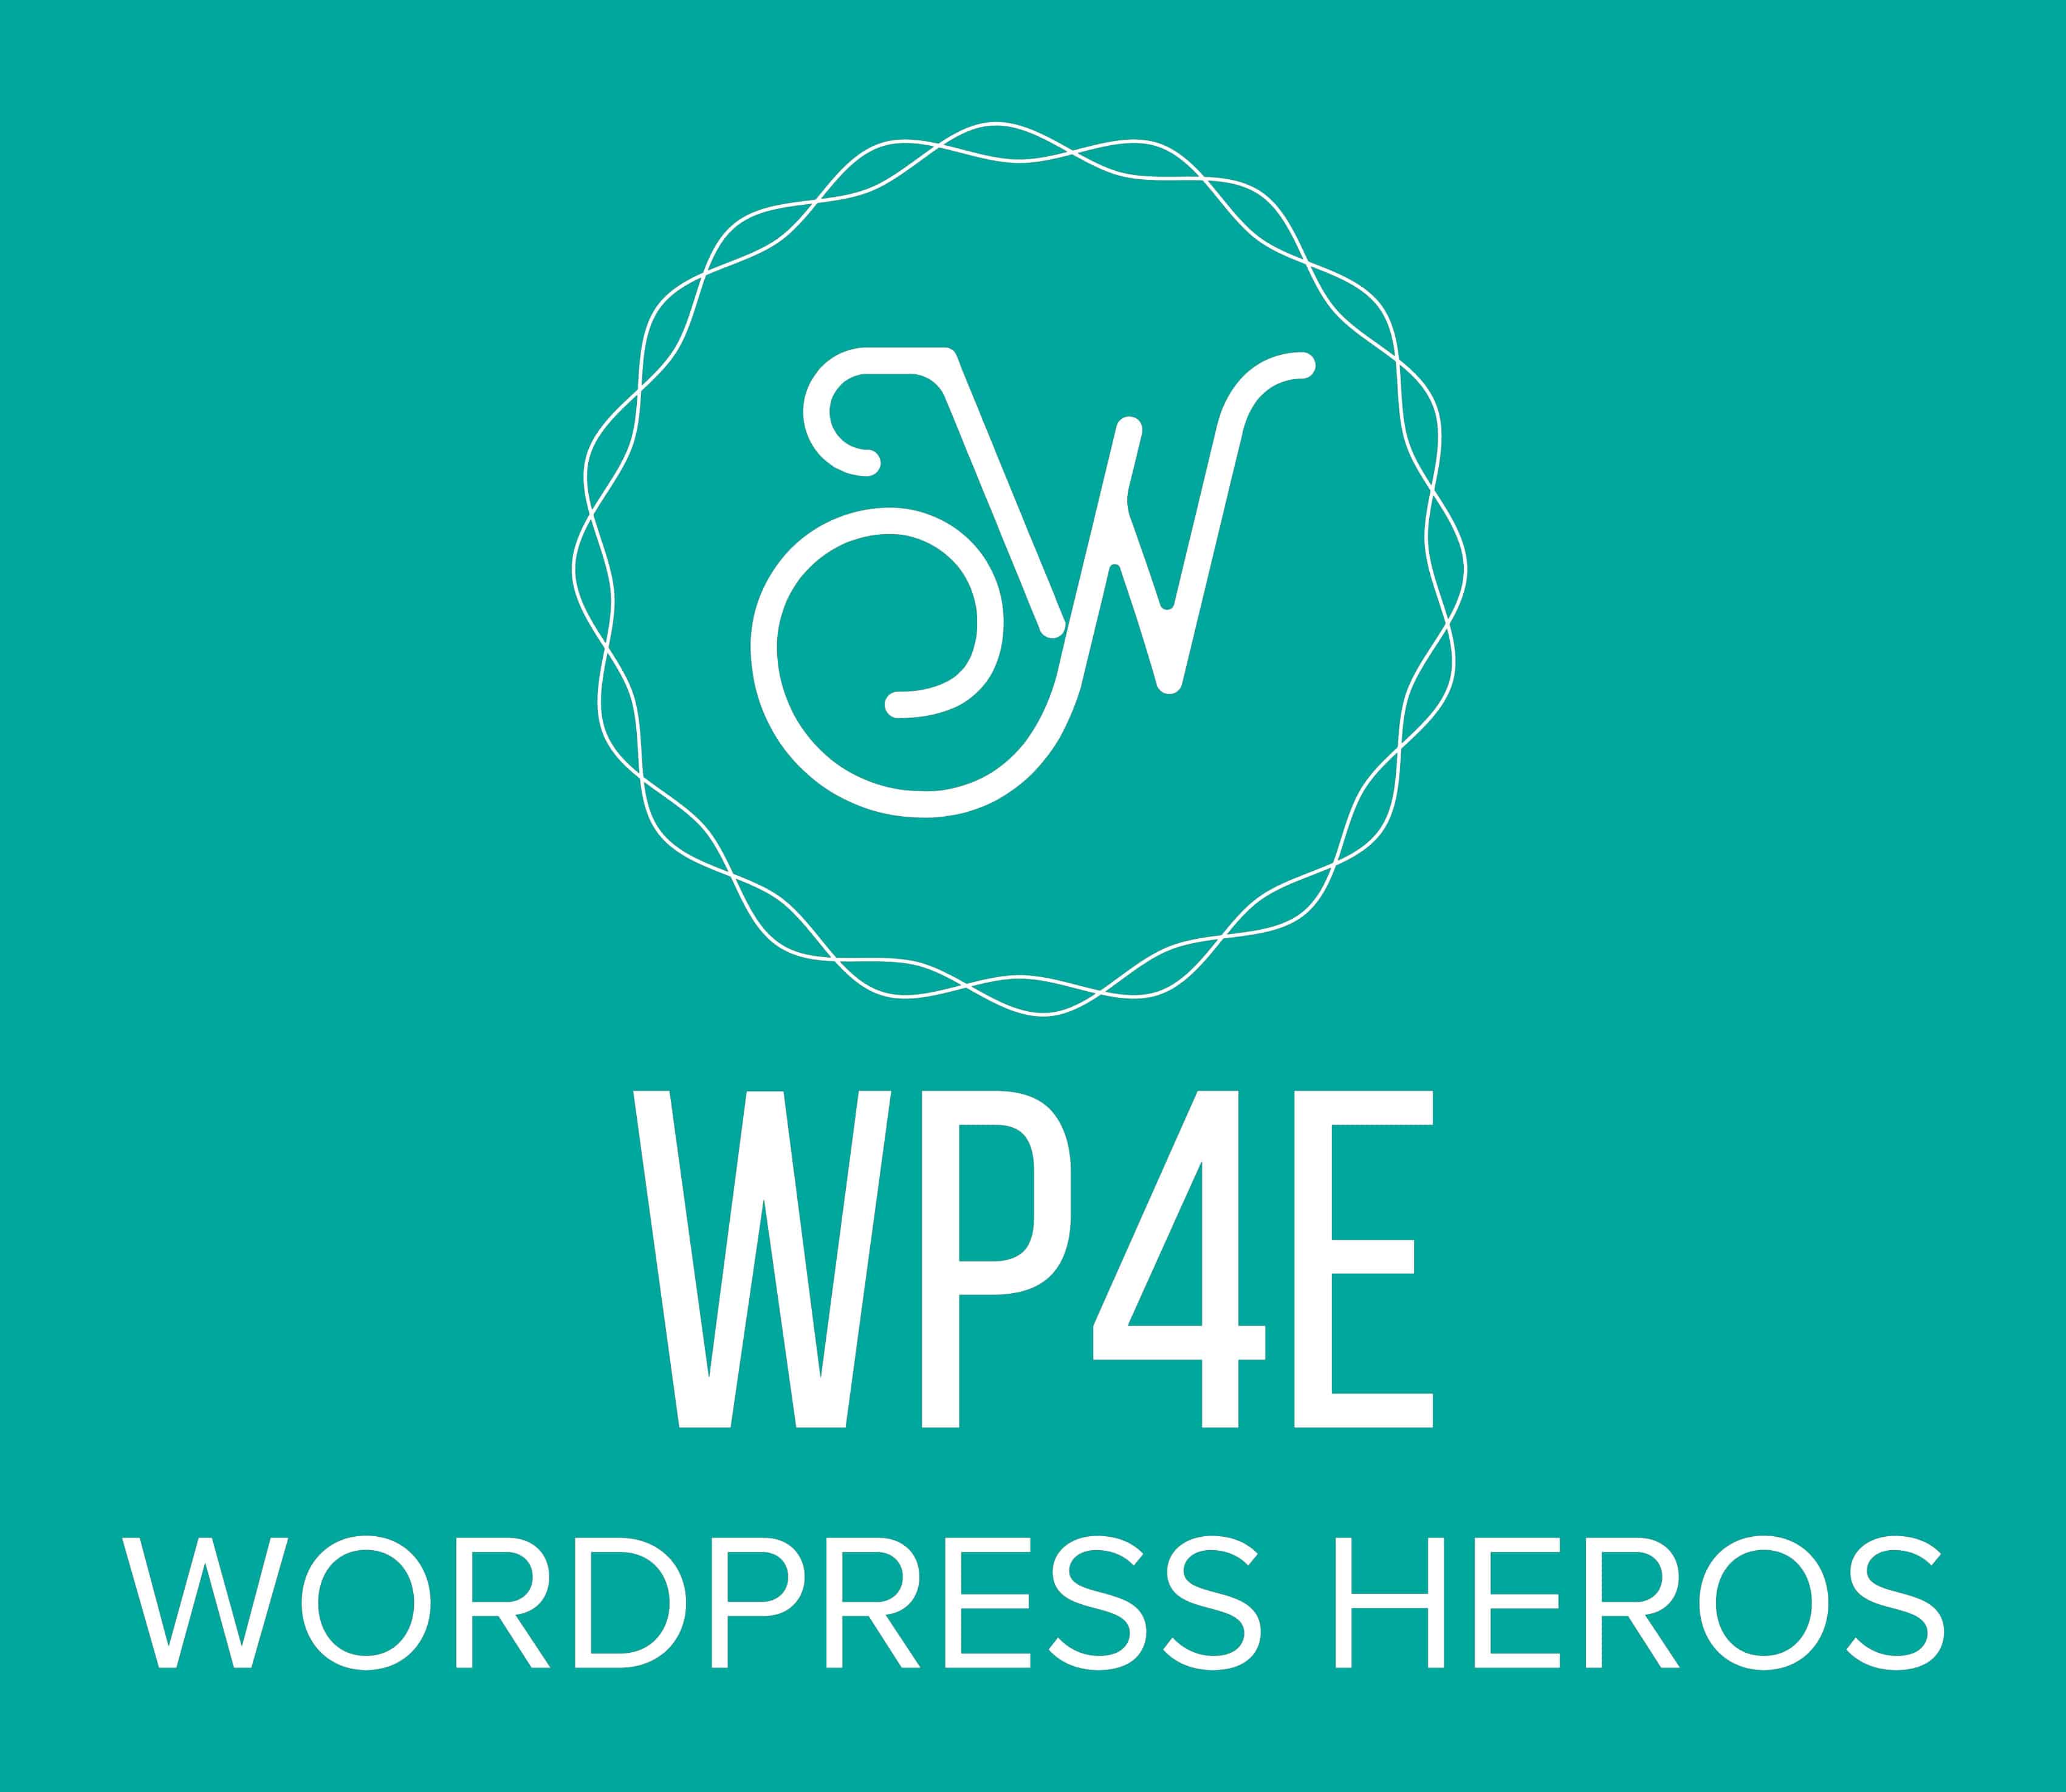 wp4e logo